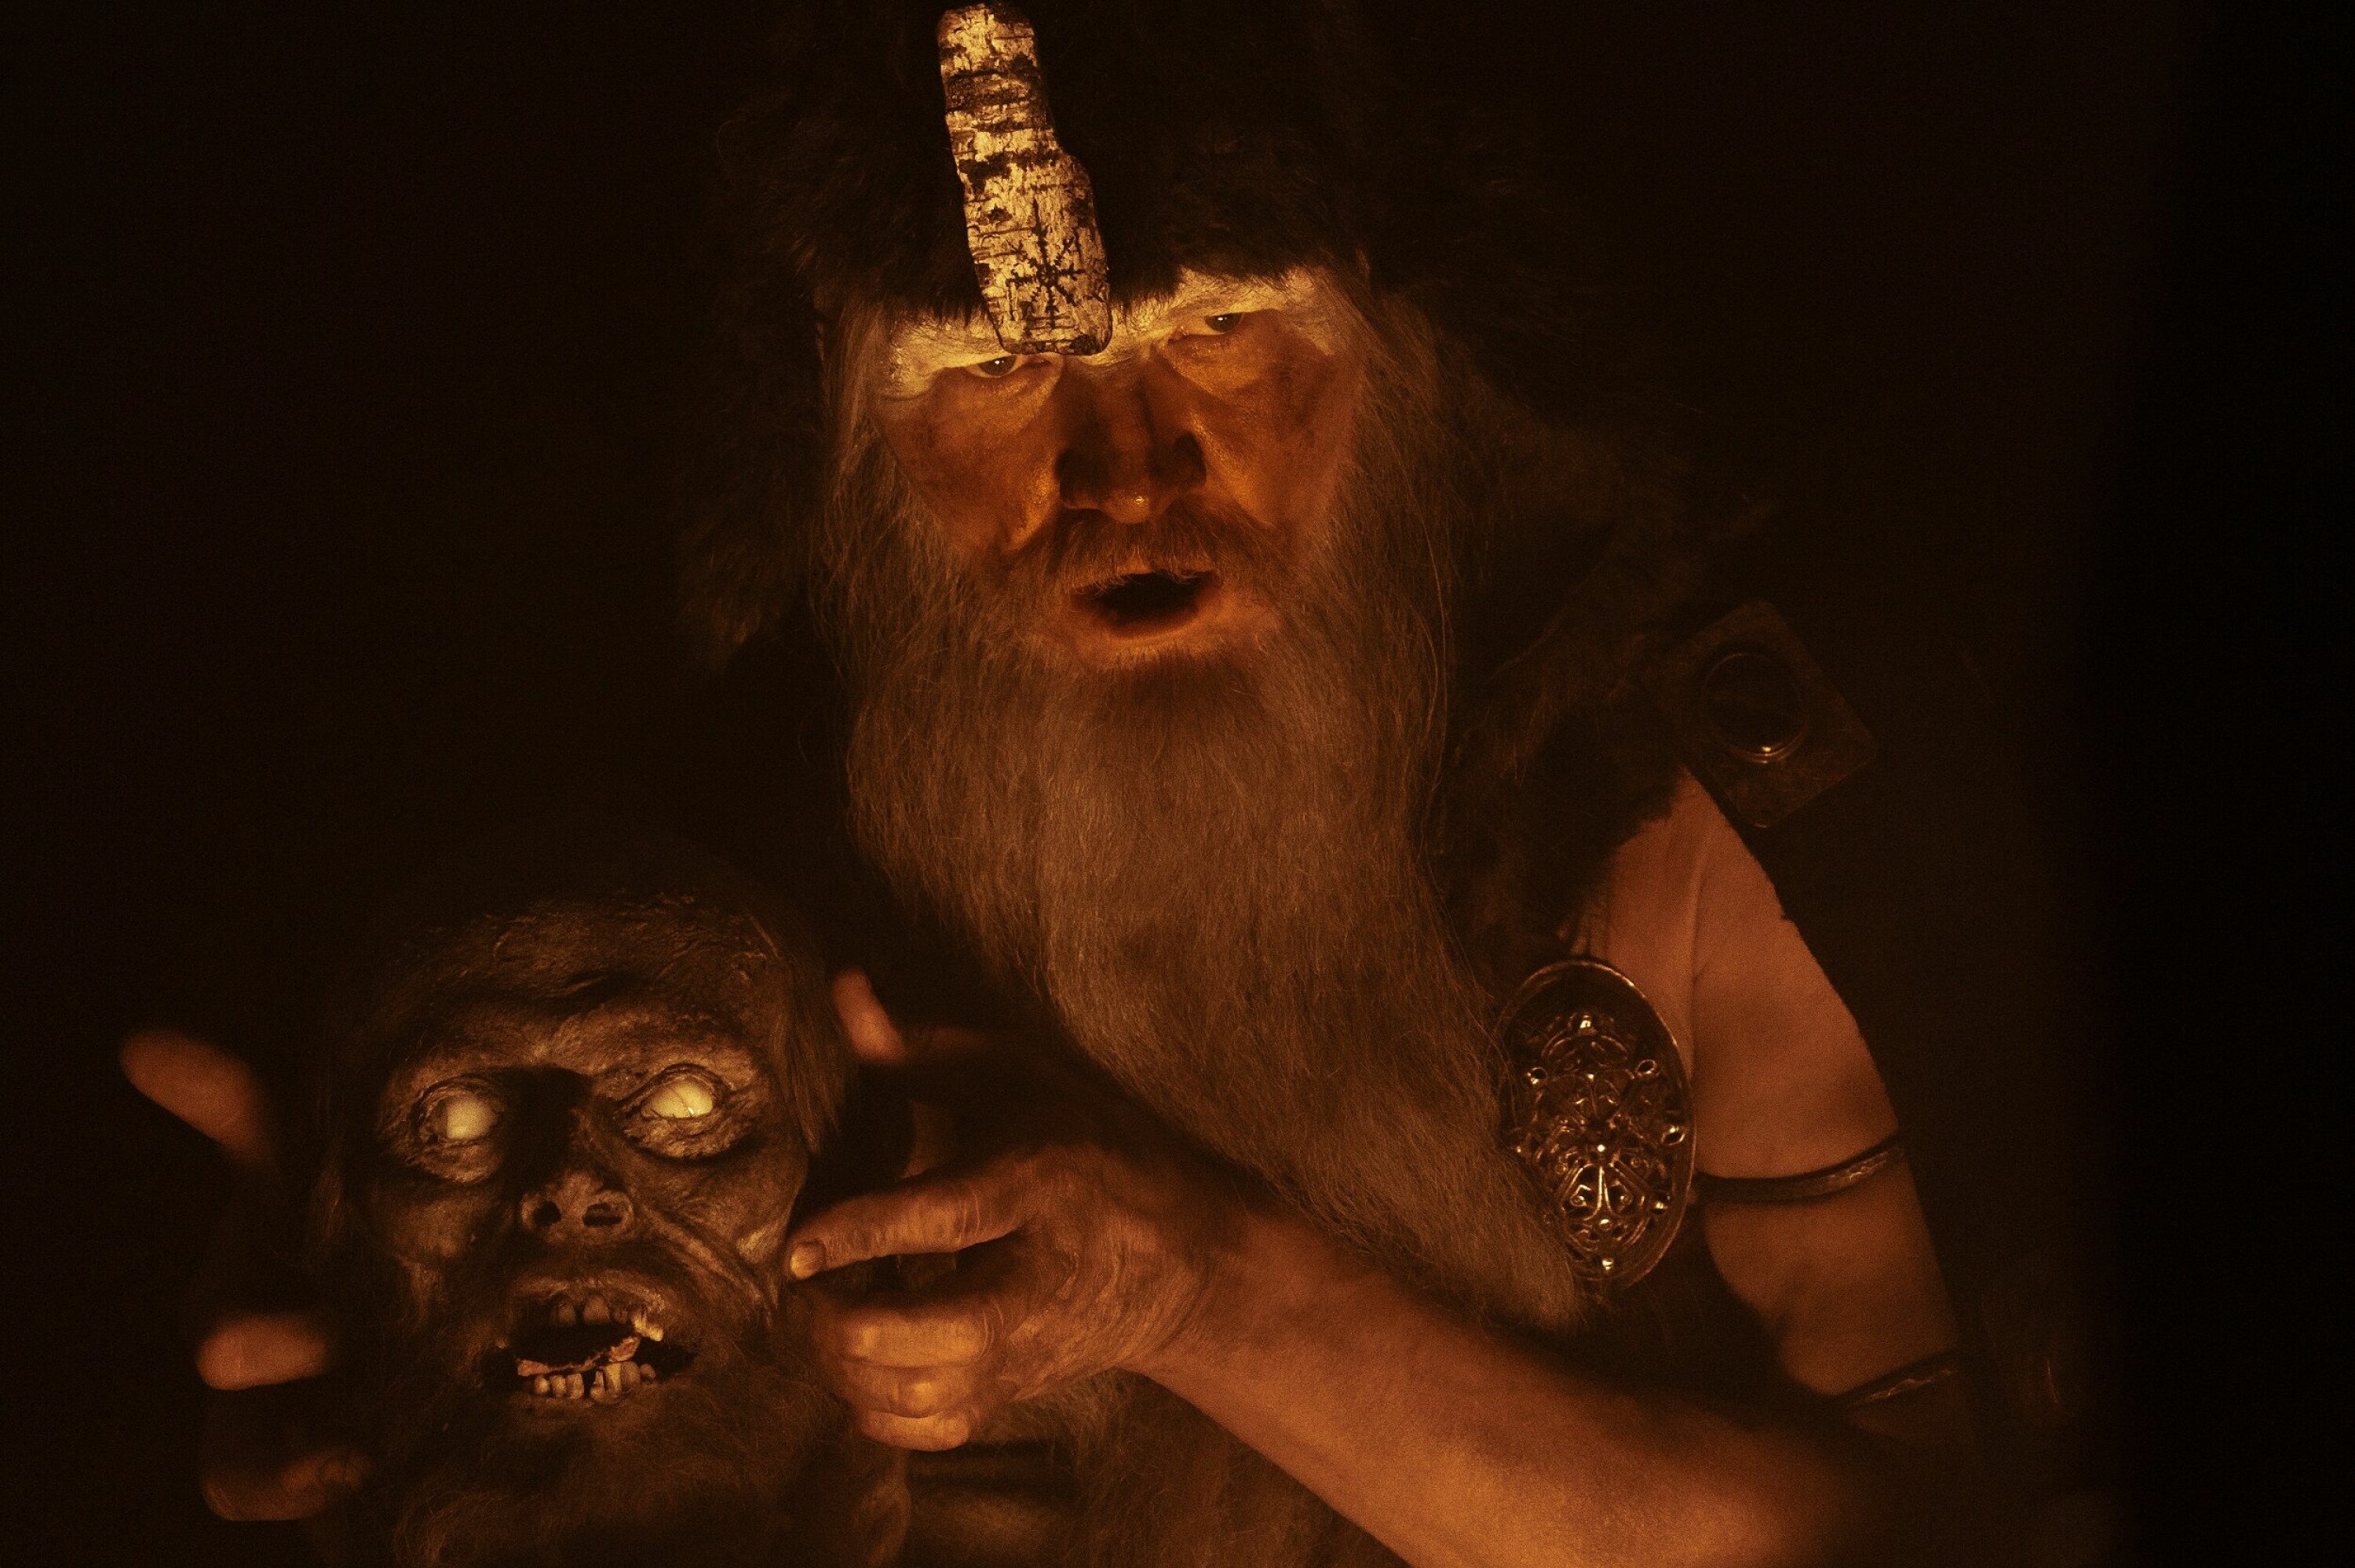 Islandske Ingvar Sigurdsson spiller en mannlig heks som bruker et avhogd hode til å kommunisere med underverdenen, i sann norrøn stil (Odin og Mimes hode).